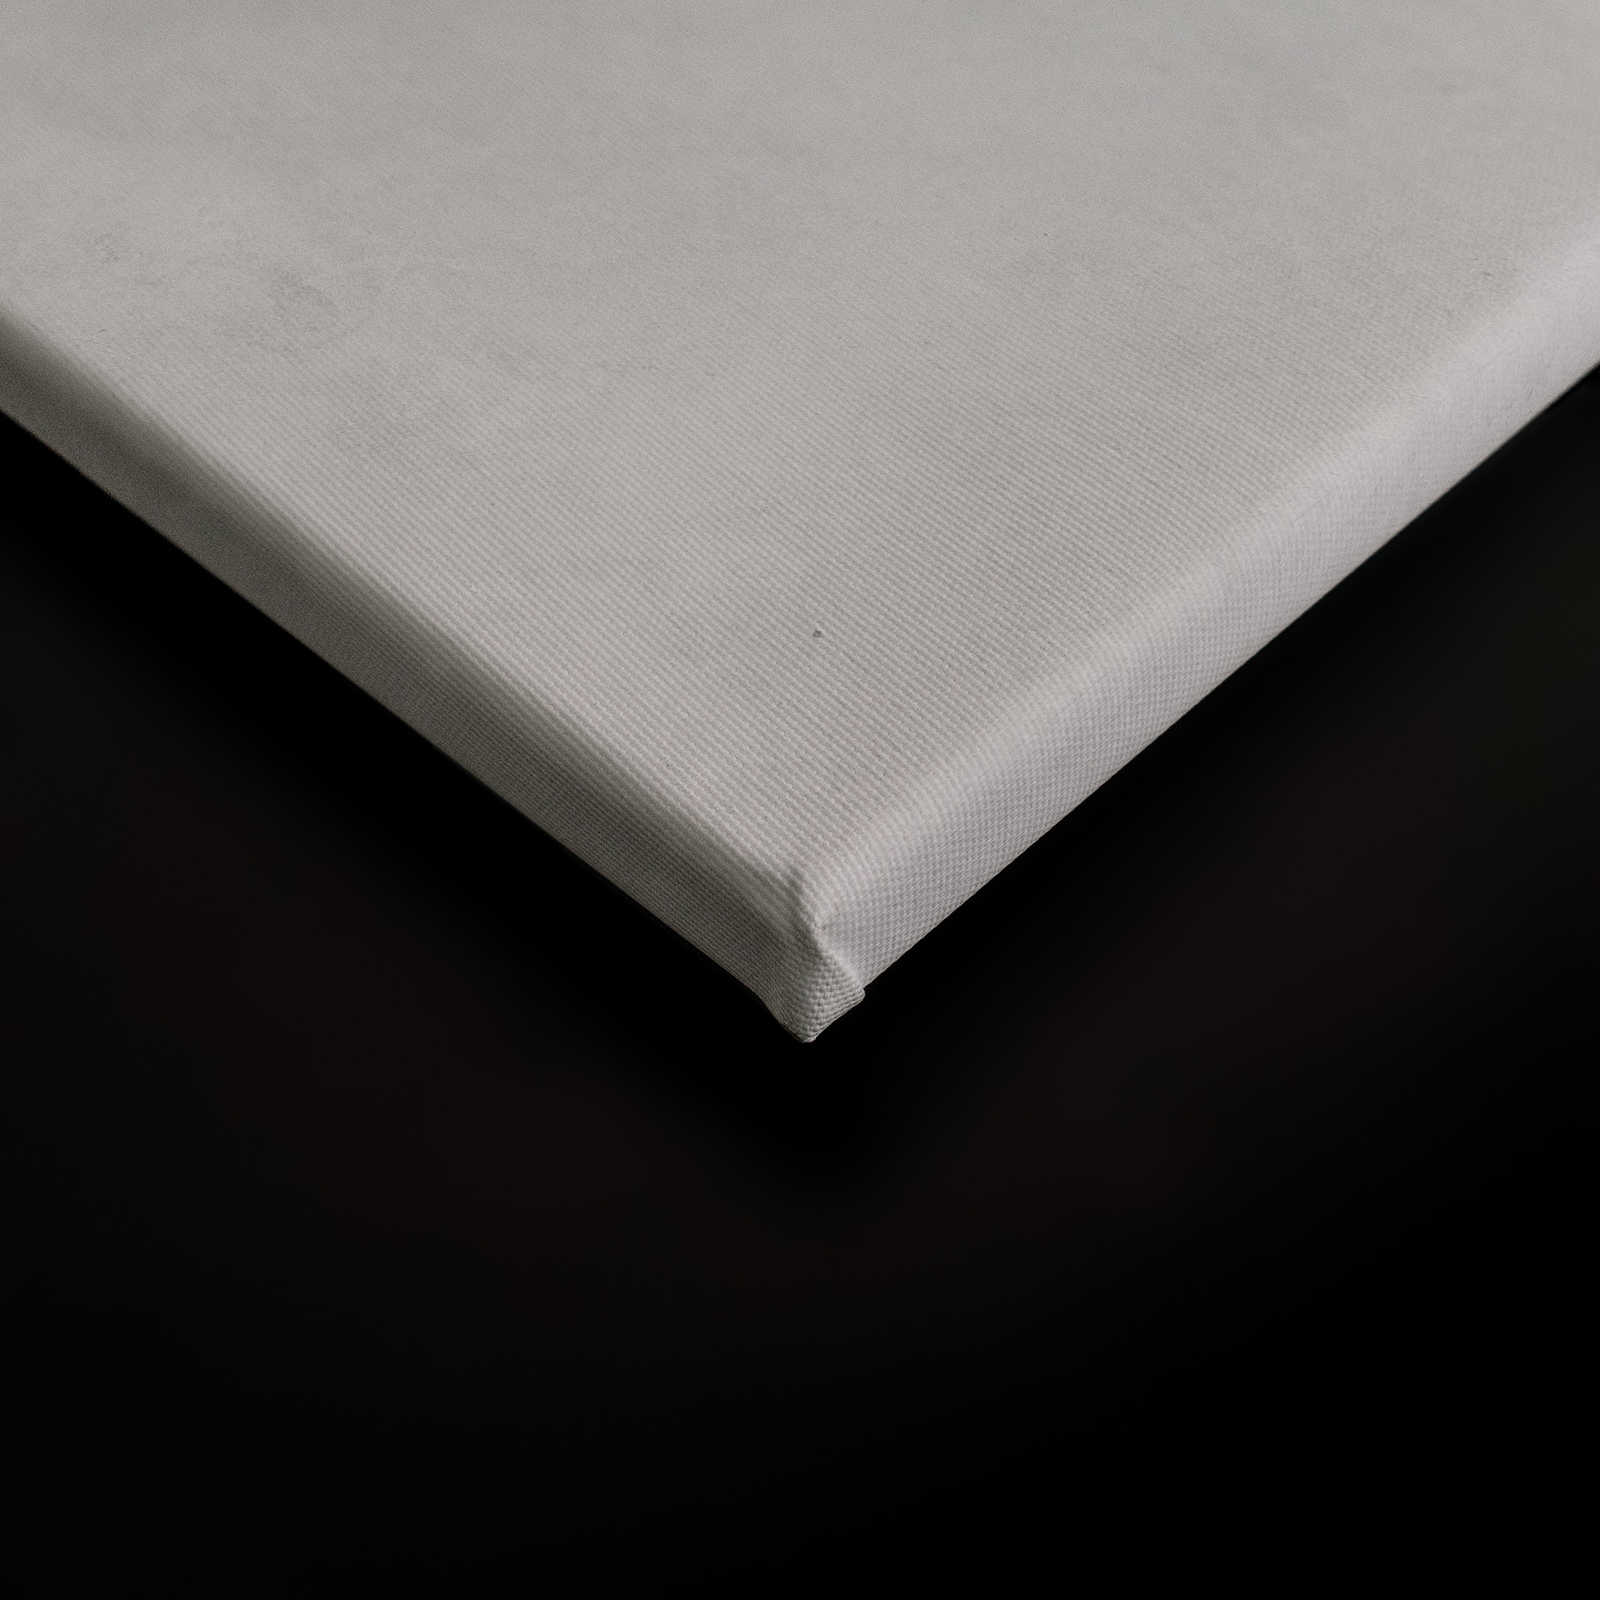             Terrazzo 3 - Aquarell Terrazzo Wanddeko als Leinwandbild - Löschpapier Struktur – 0,90 m x 0,60 m
        